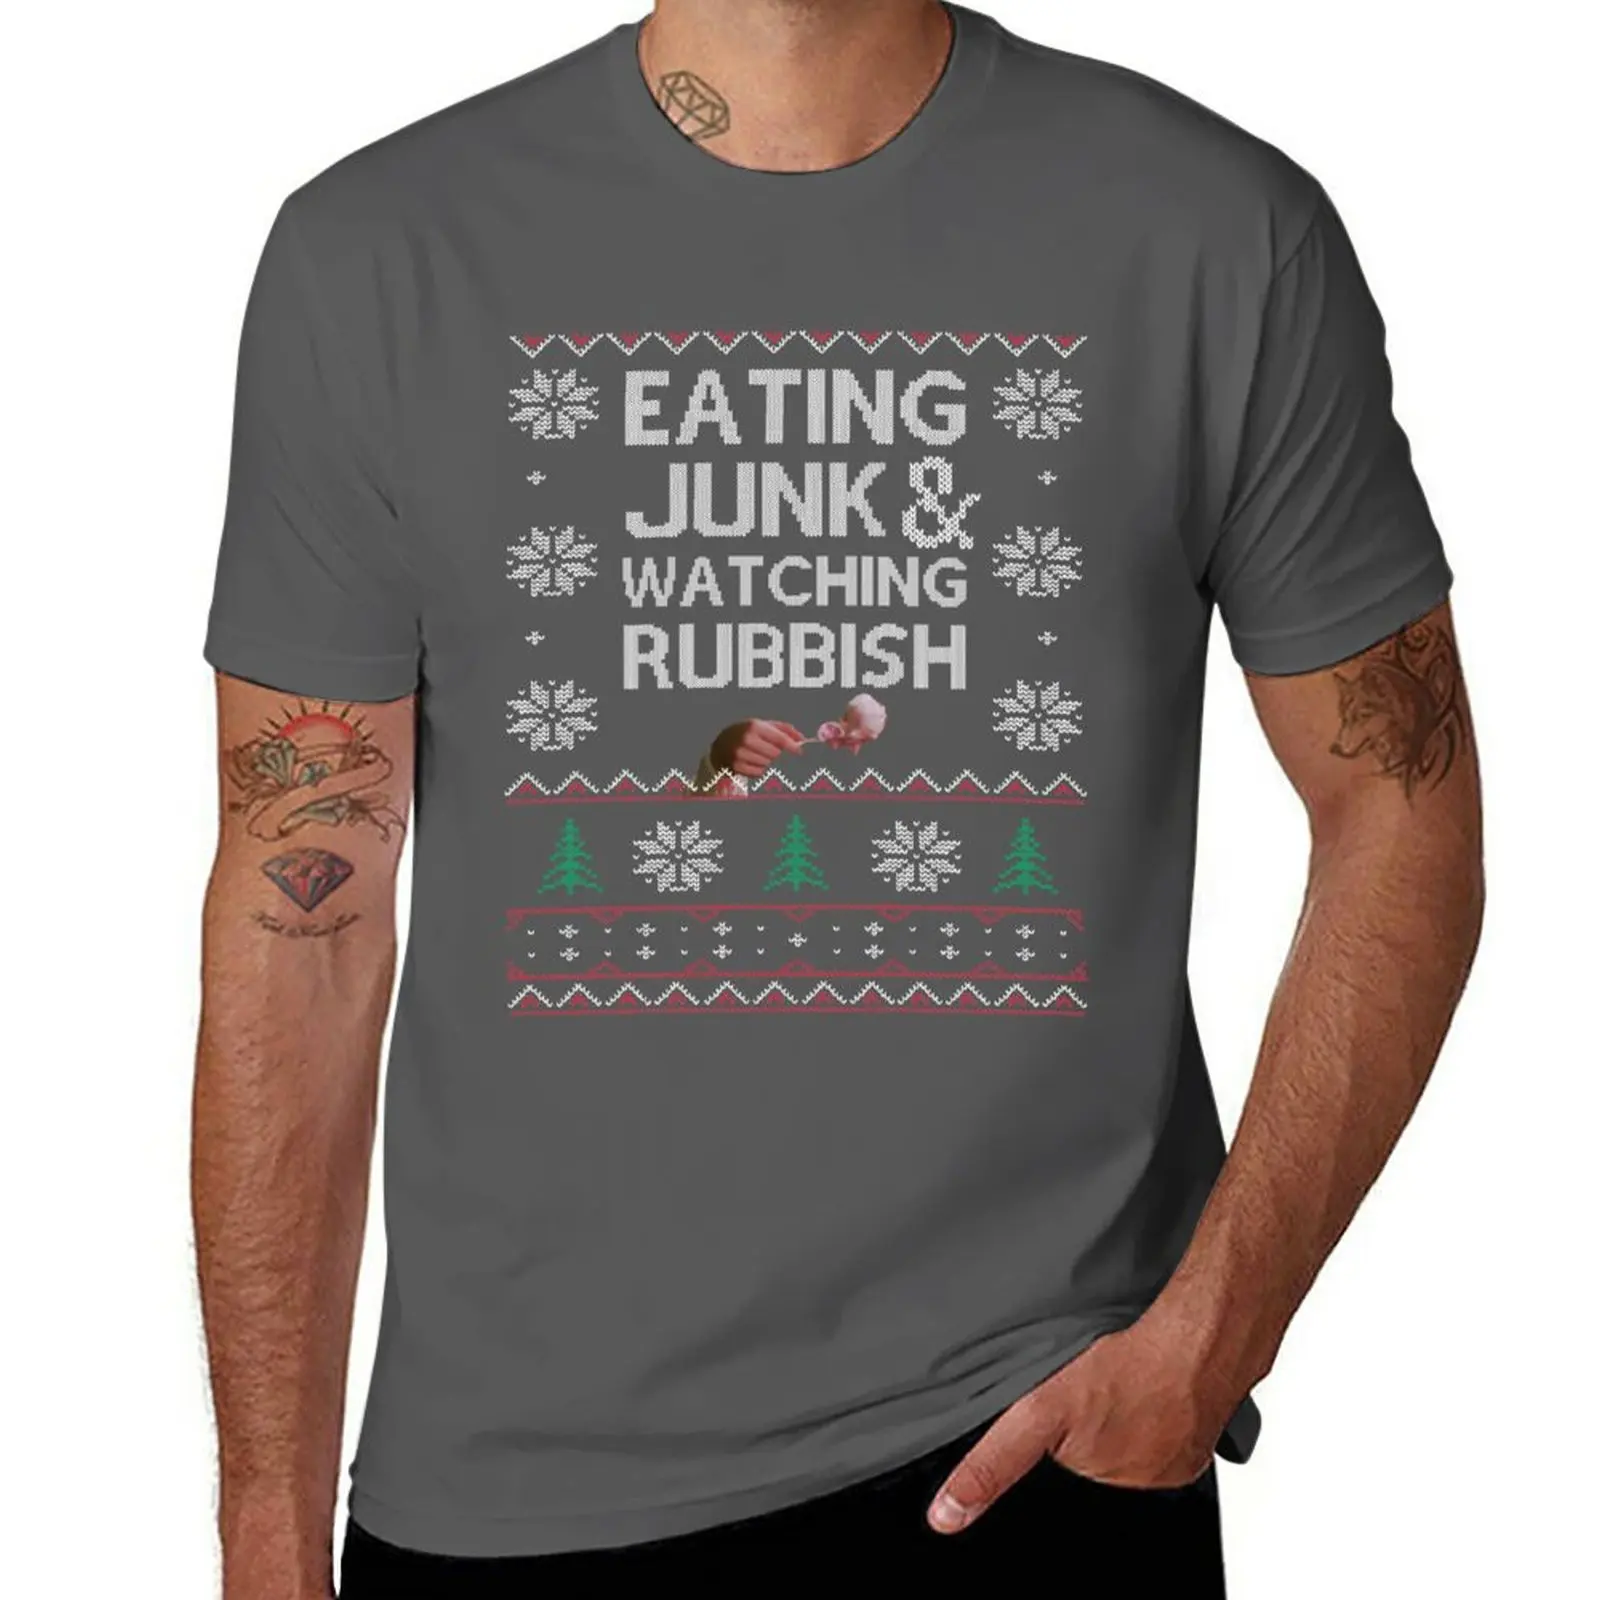 Футболка Eating Junk & Watching Garbish, черная футболка, футболка с коротким рукавом, мужские высокие футболки Изображение 0